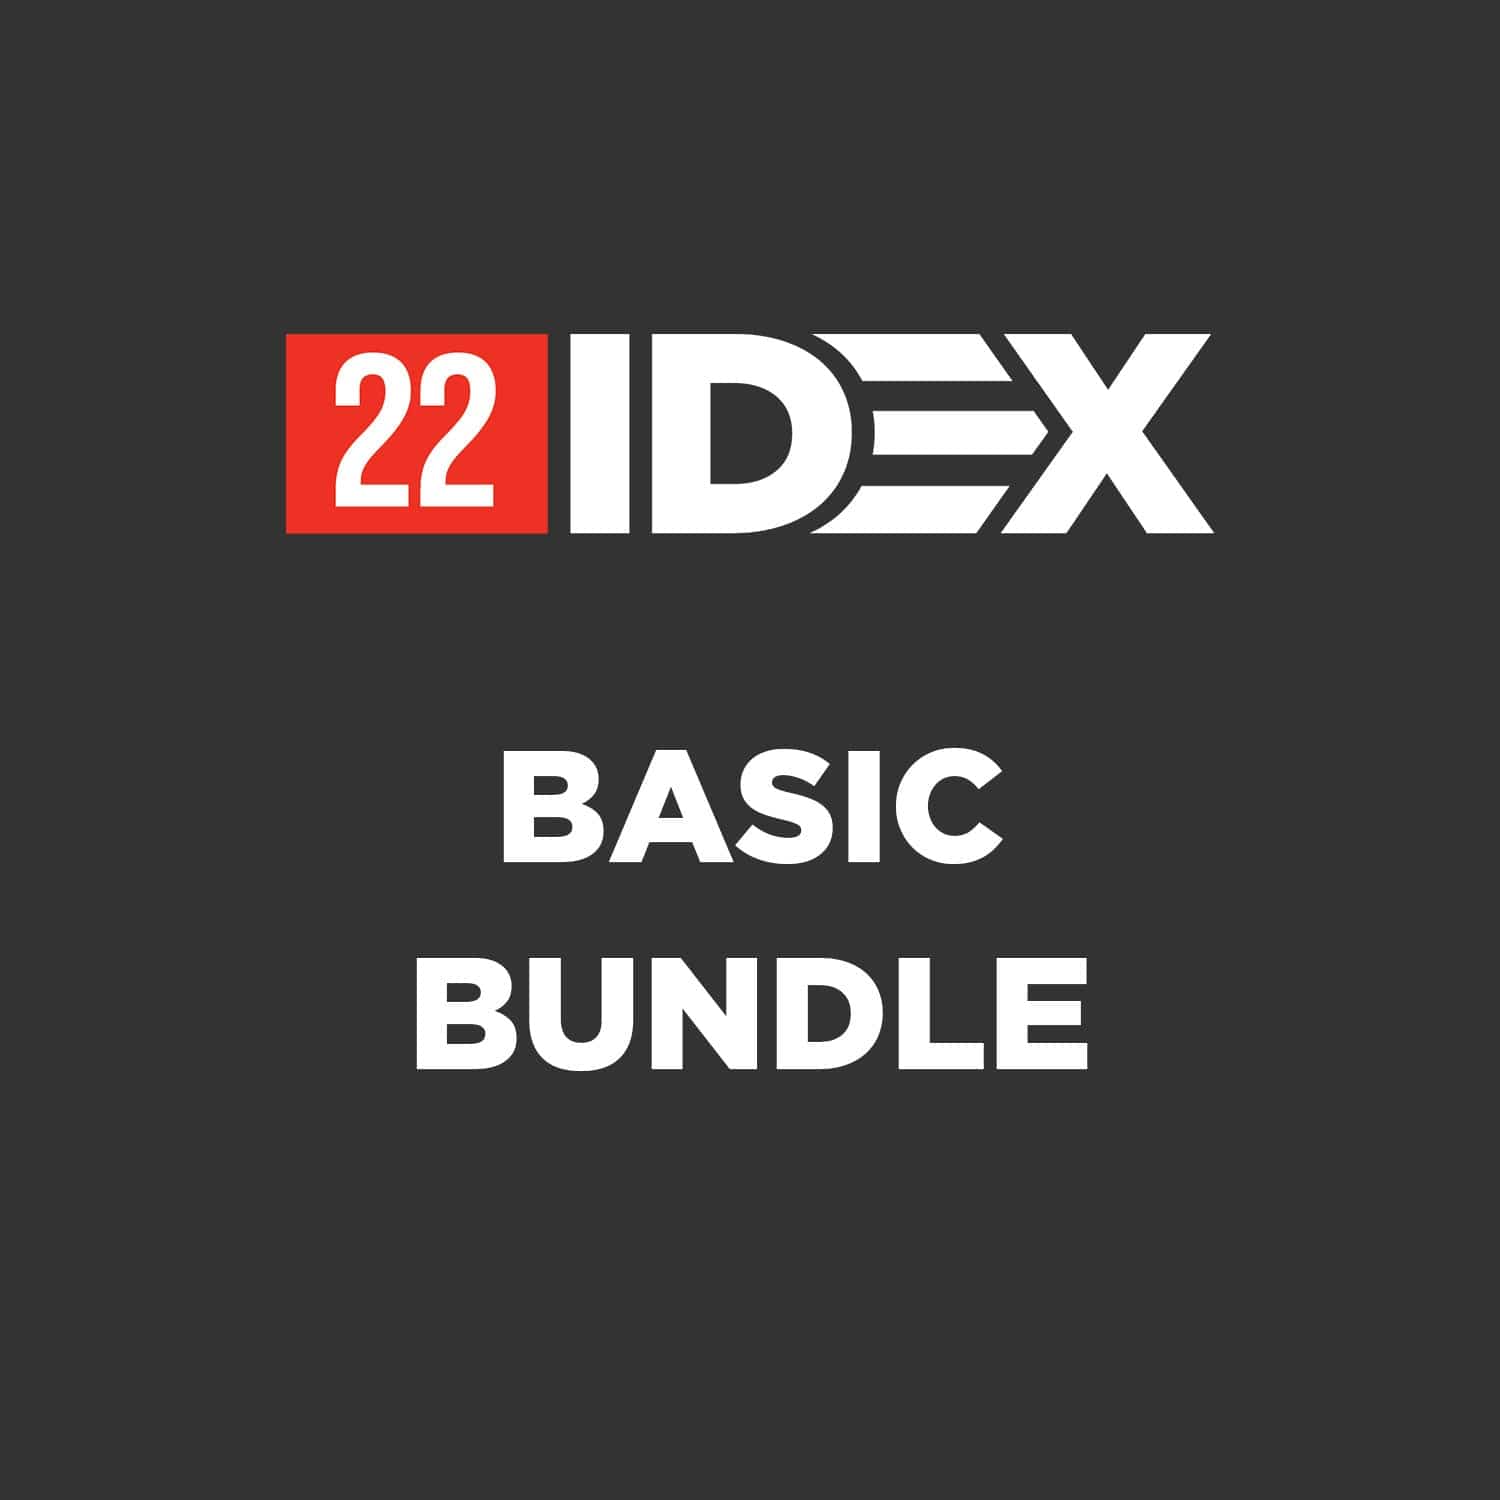 22 IDEX Basic Bundle Vision Miner